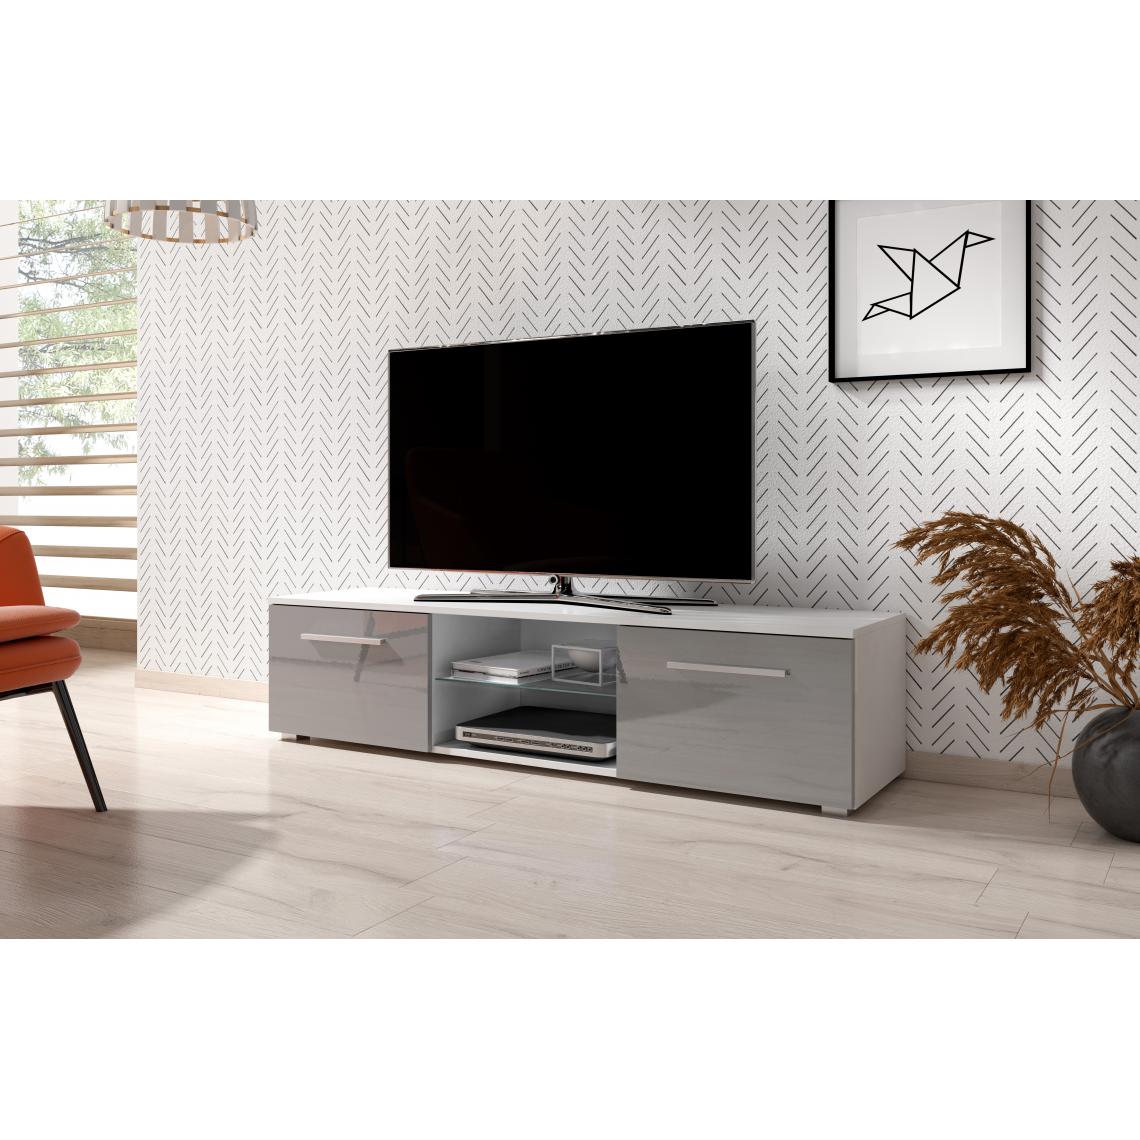 3xeliving - Meuble TV moderniste Punes blanc / gris brillant 100 cm - Meubles TV, Hi-Fi